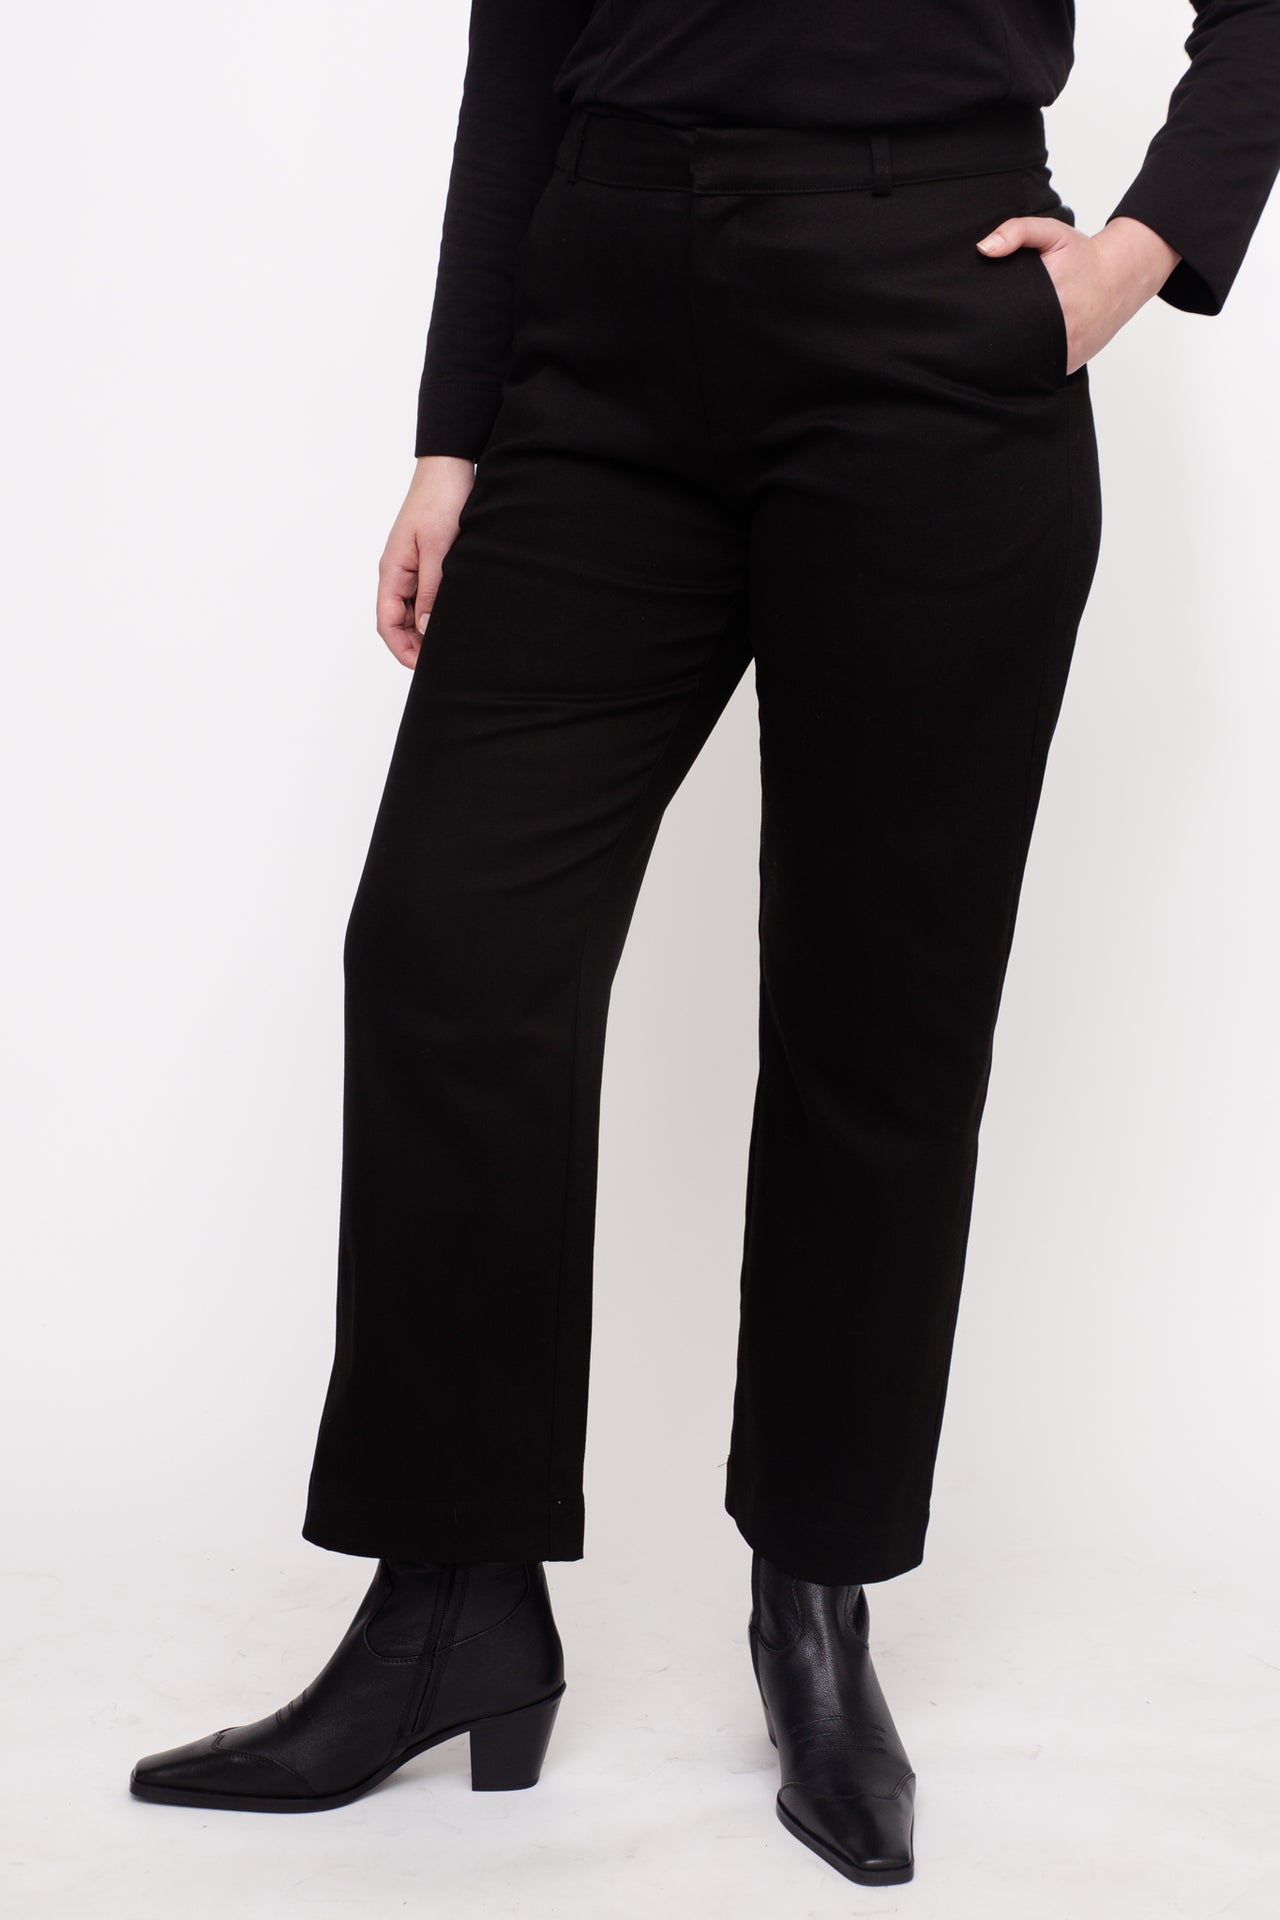 SASHA pants W24 (44-50) - Black